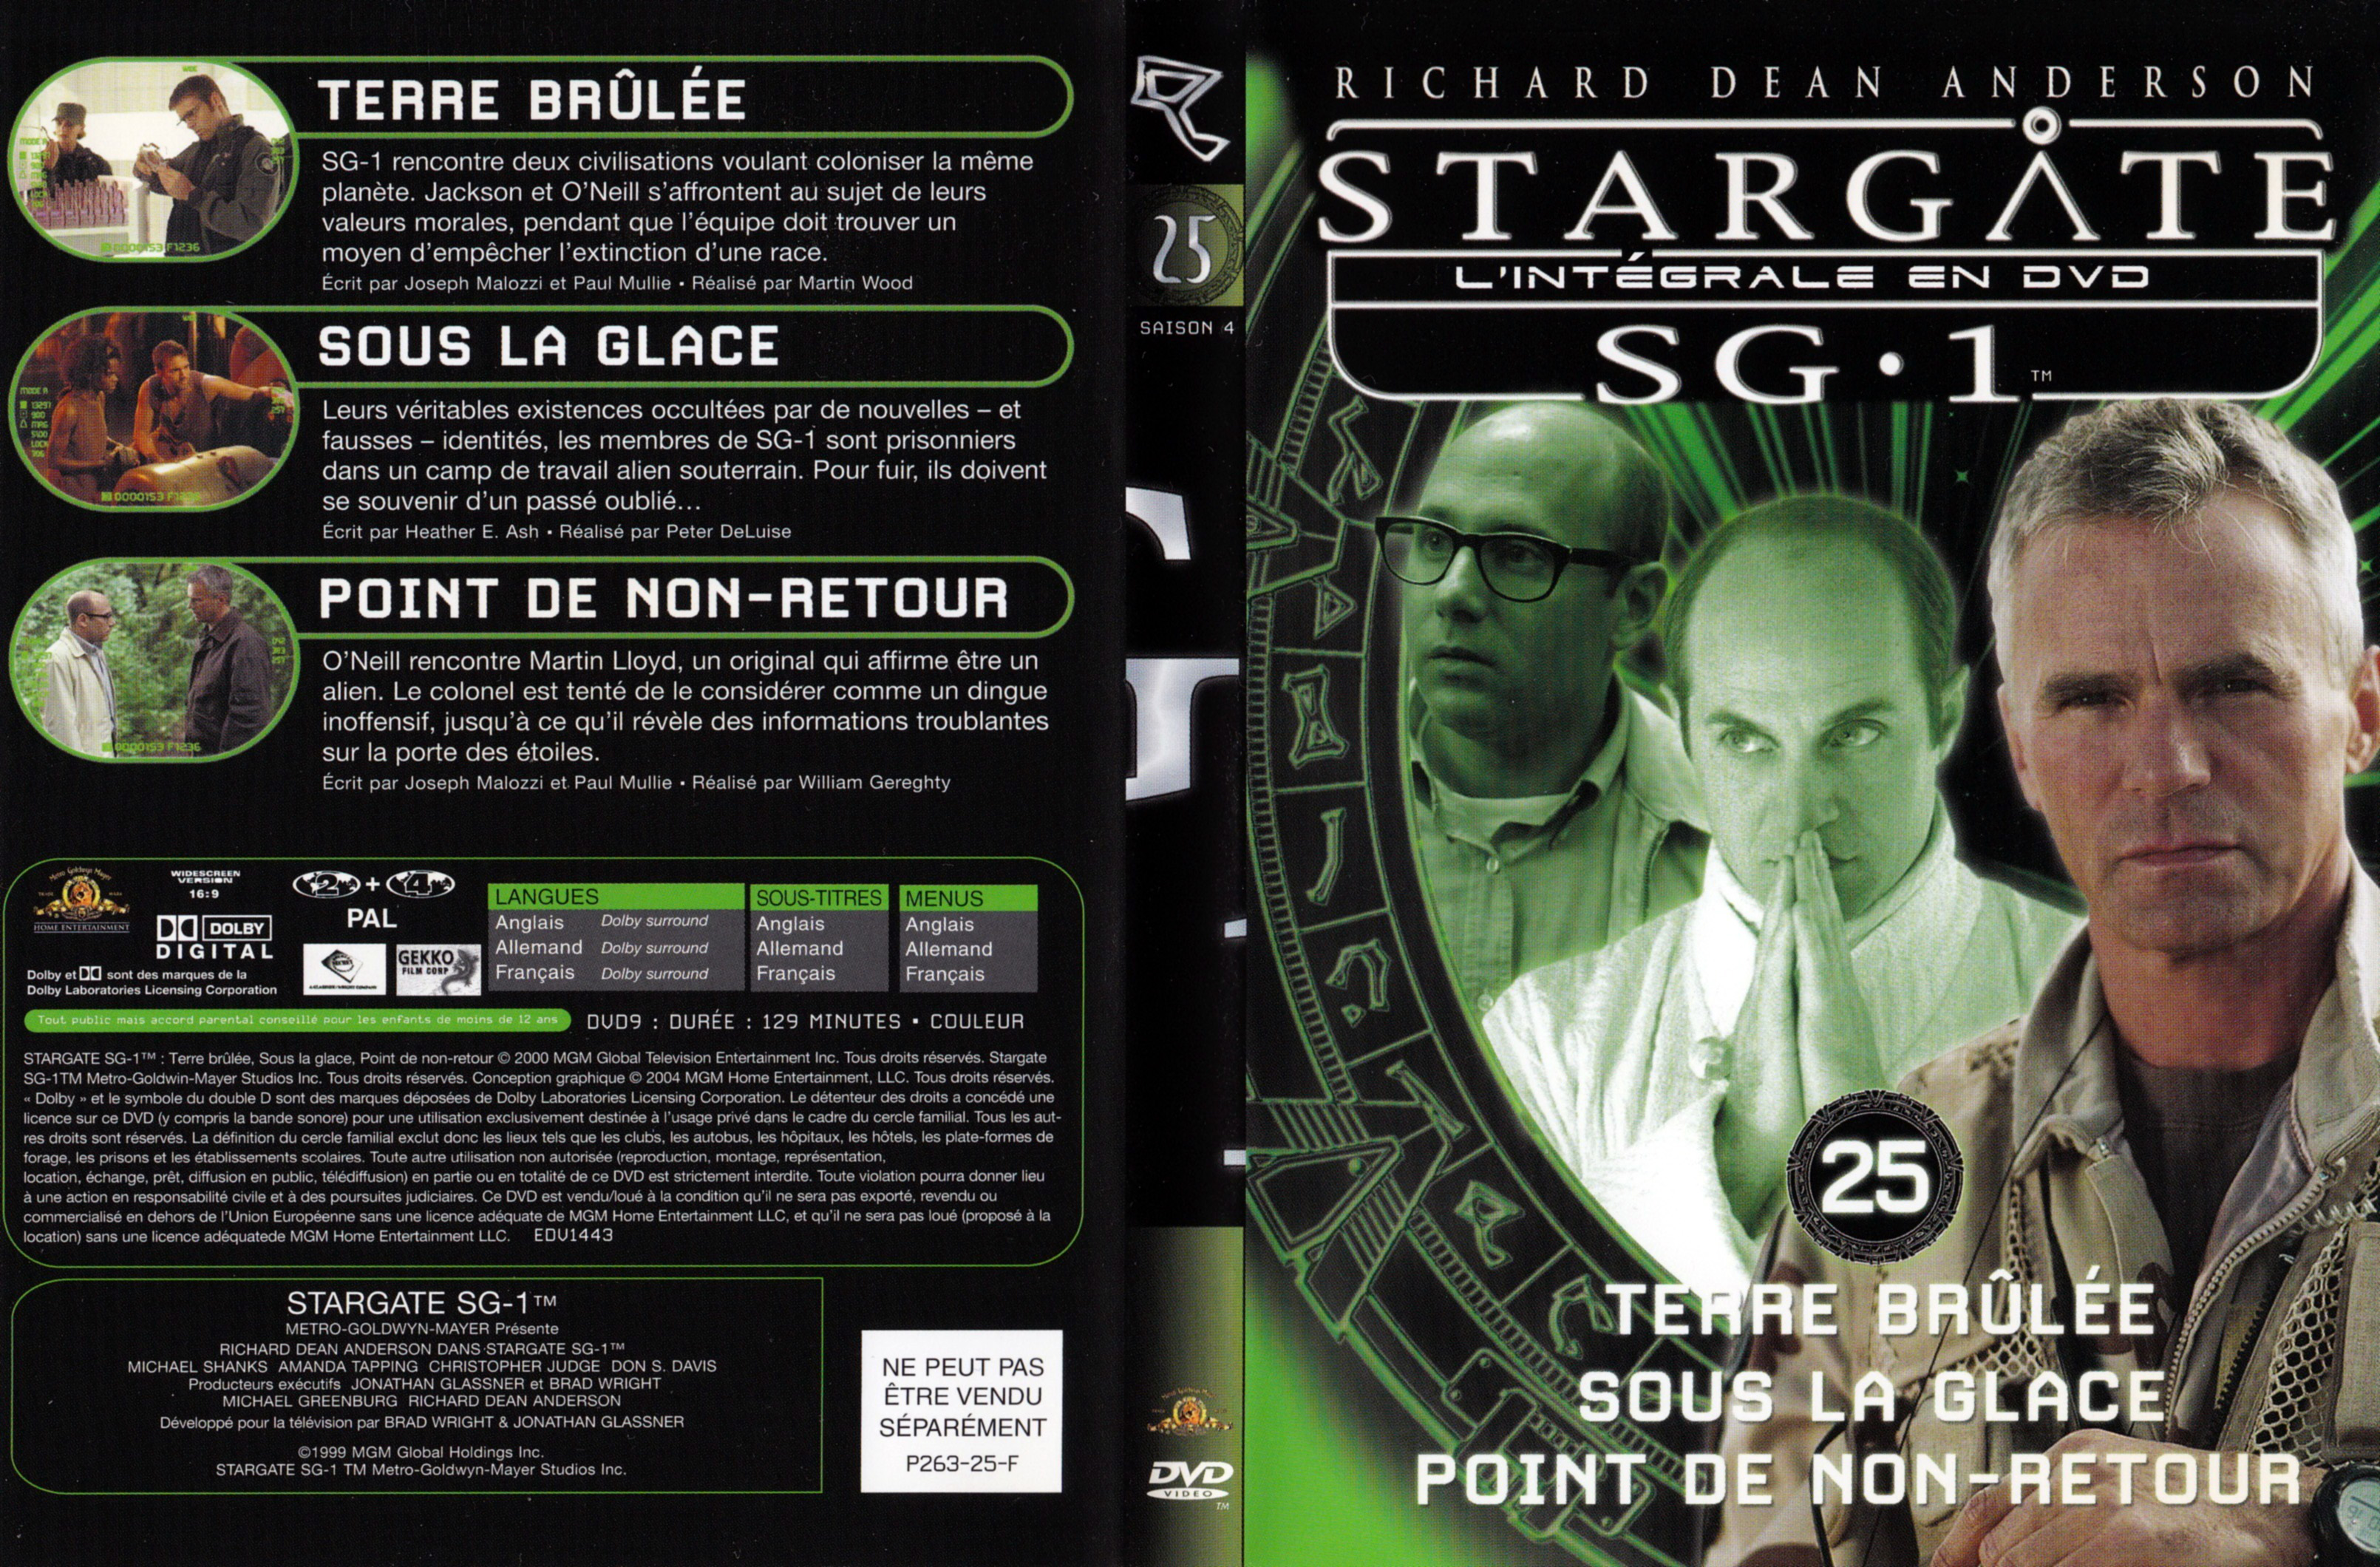 Jaquette DVD Stargate SG1 Intgrale Saison 4 vol 25